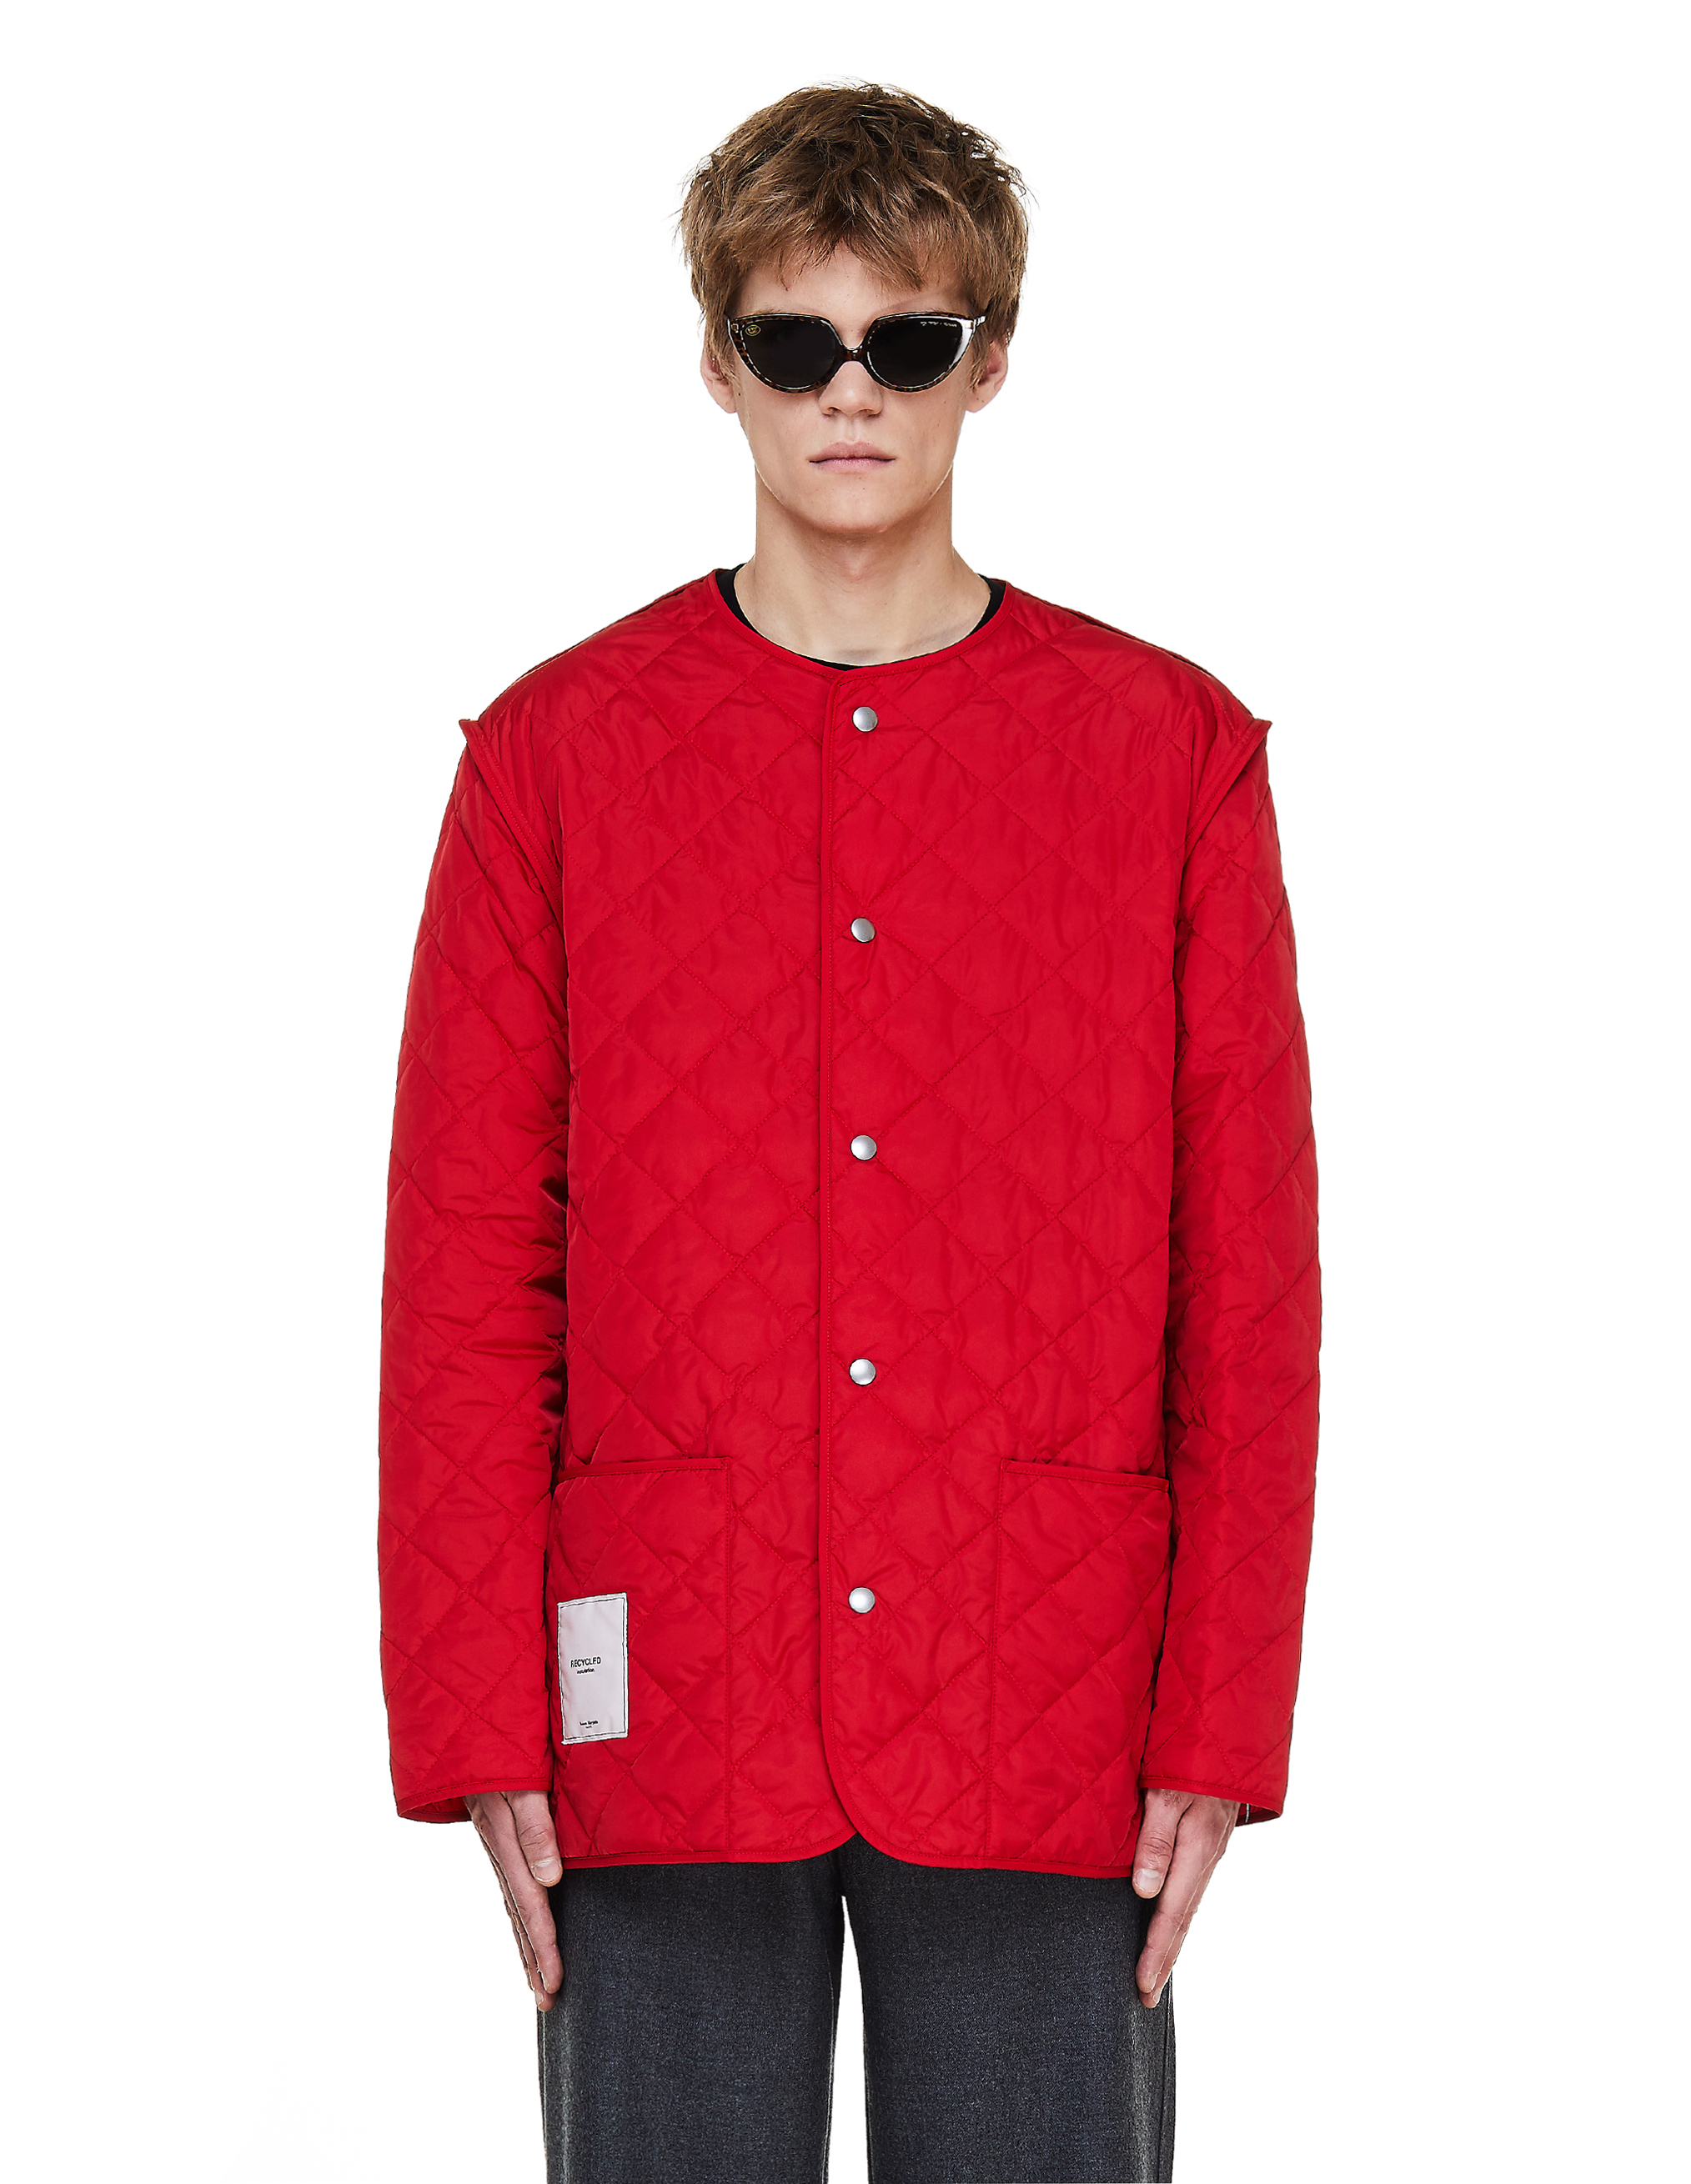 Красная стеганая куртка - Maison Margiela S50AM0467/S53045/314